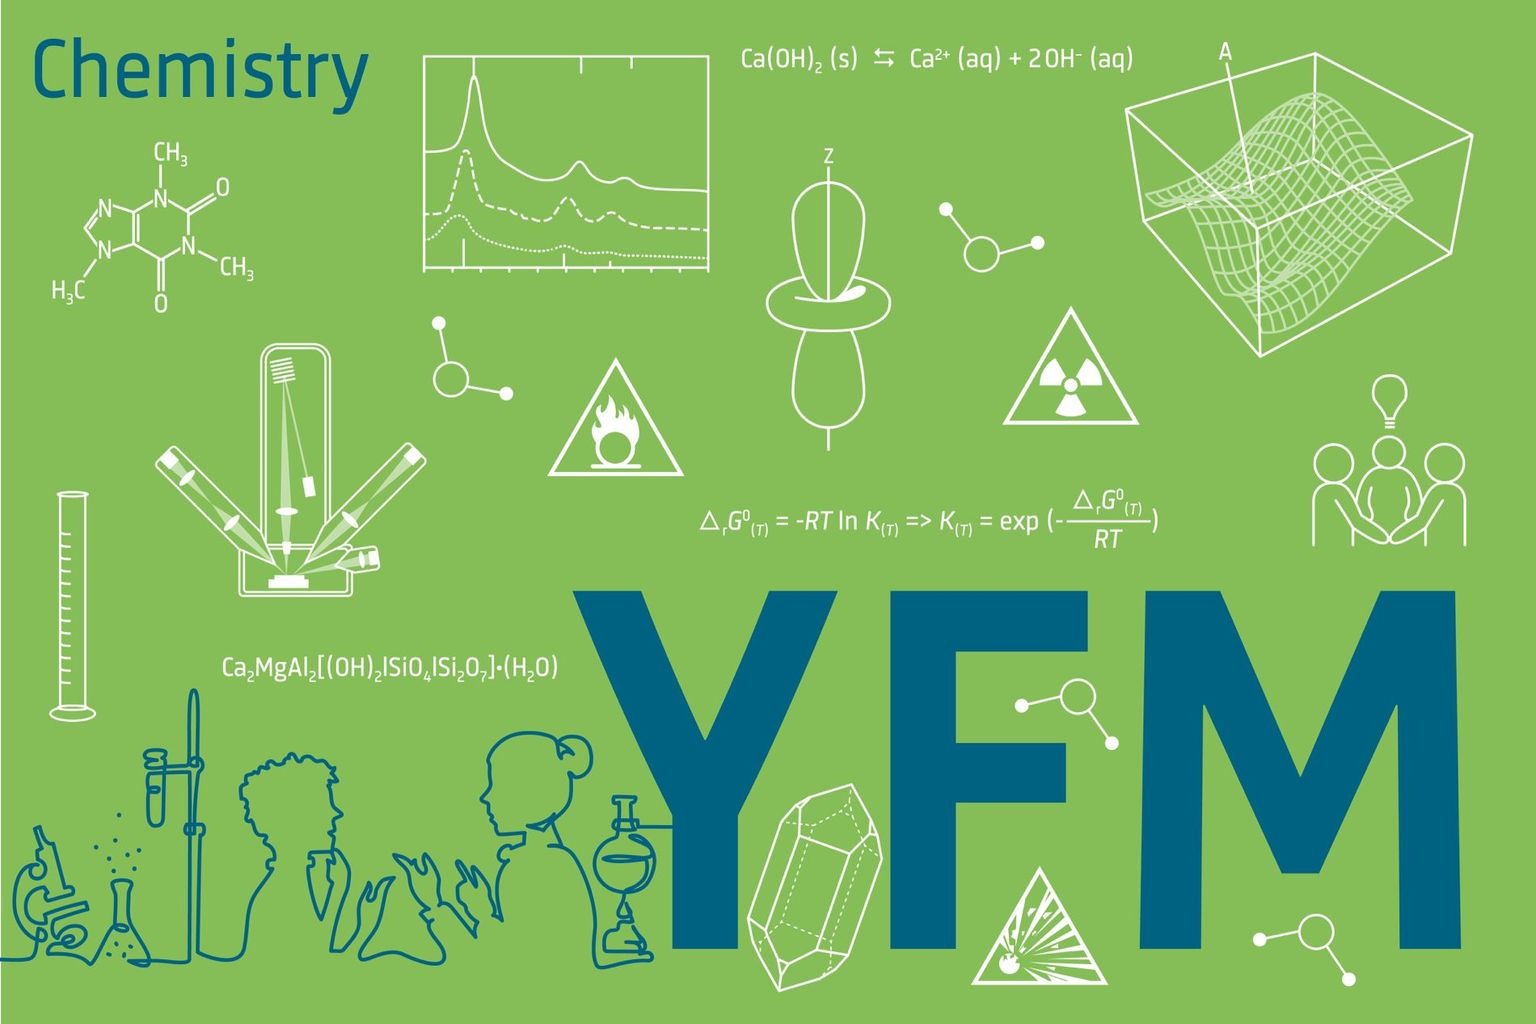 Logo chemistry YFM 3:2